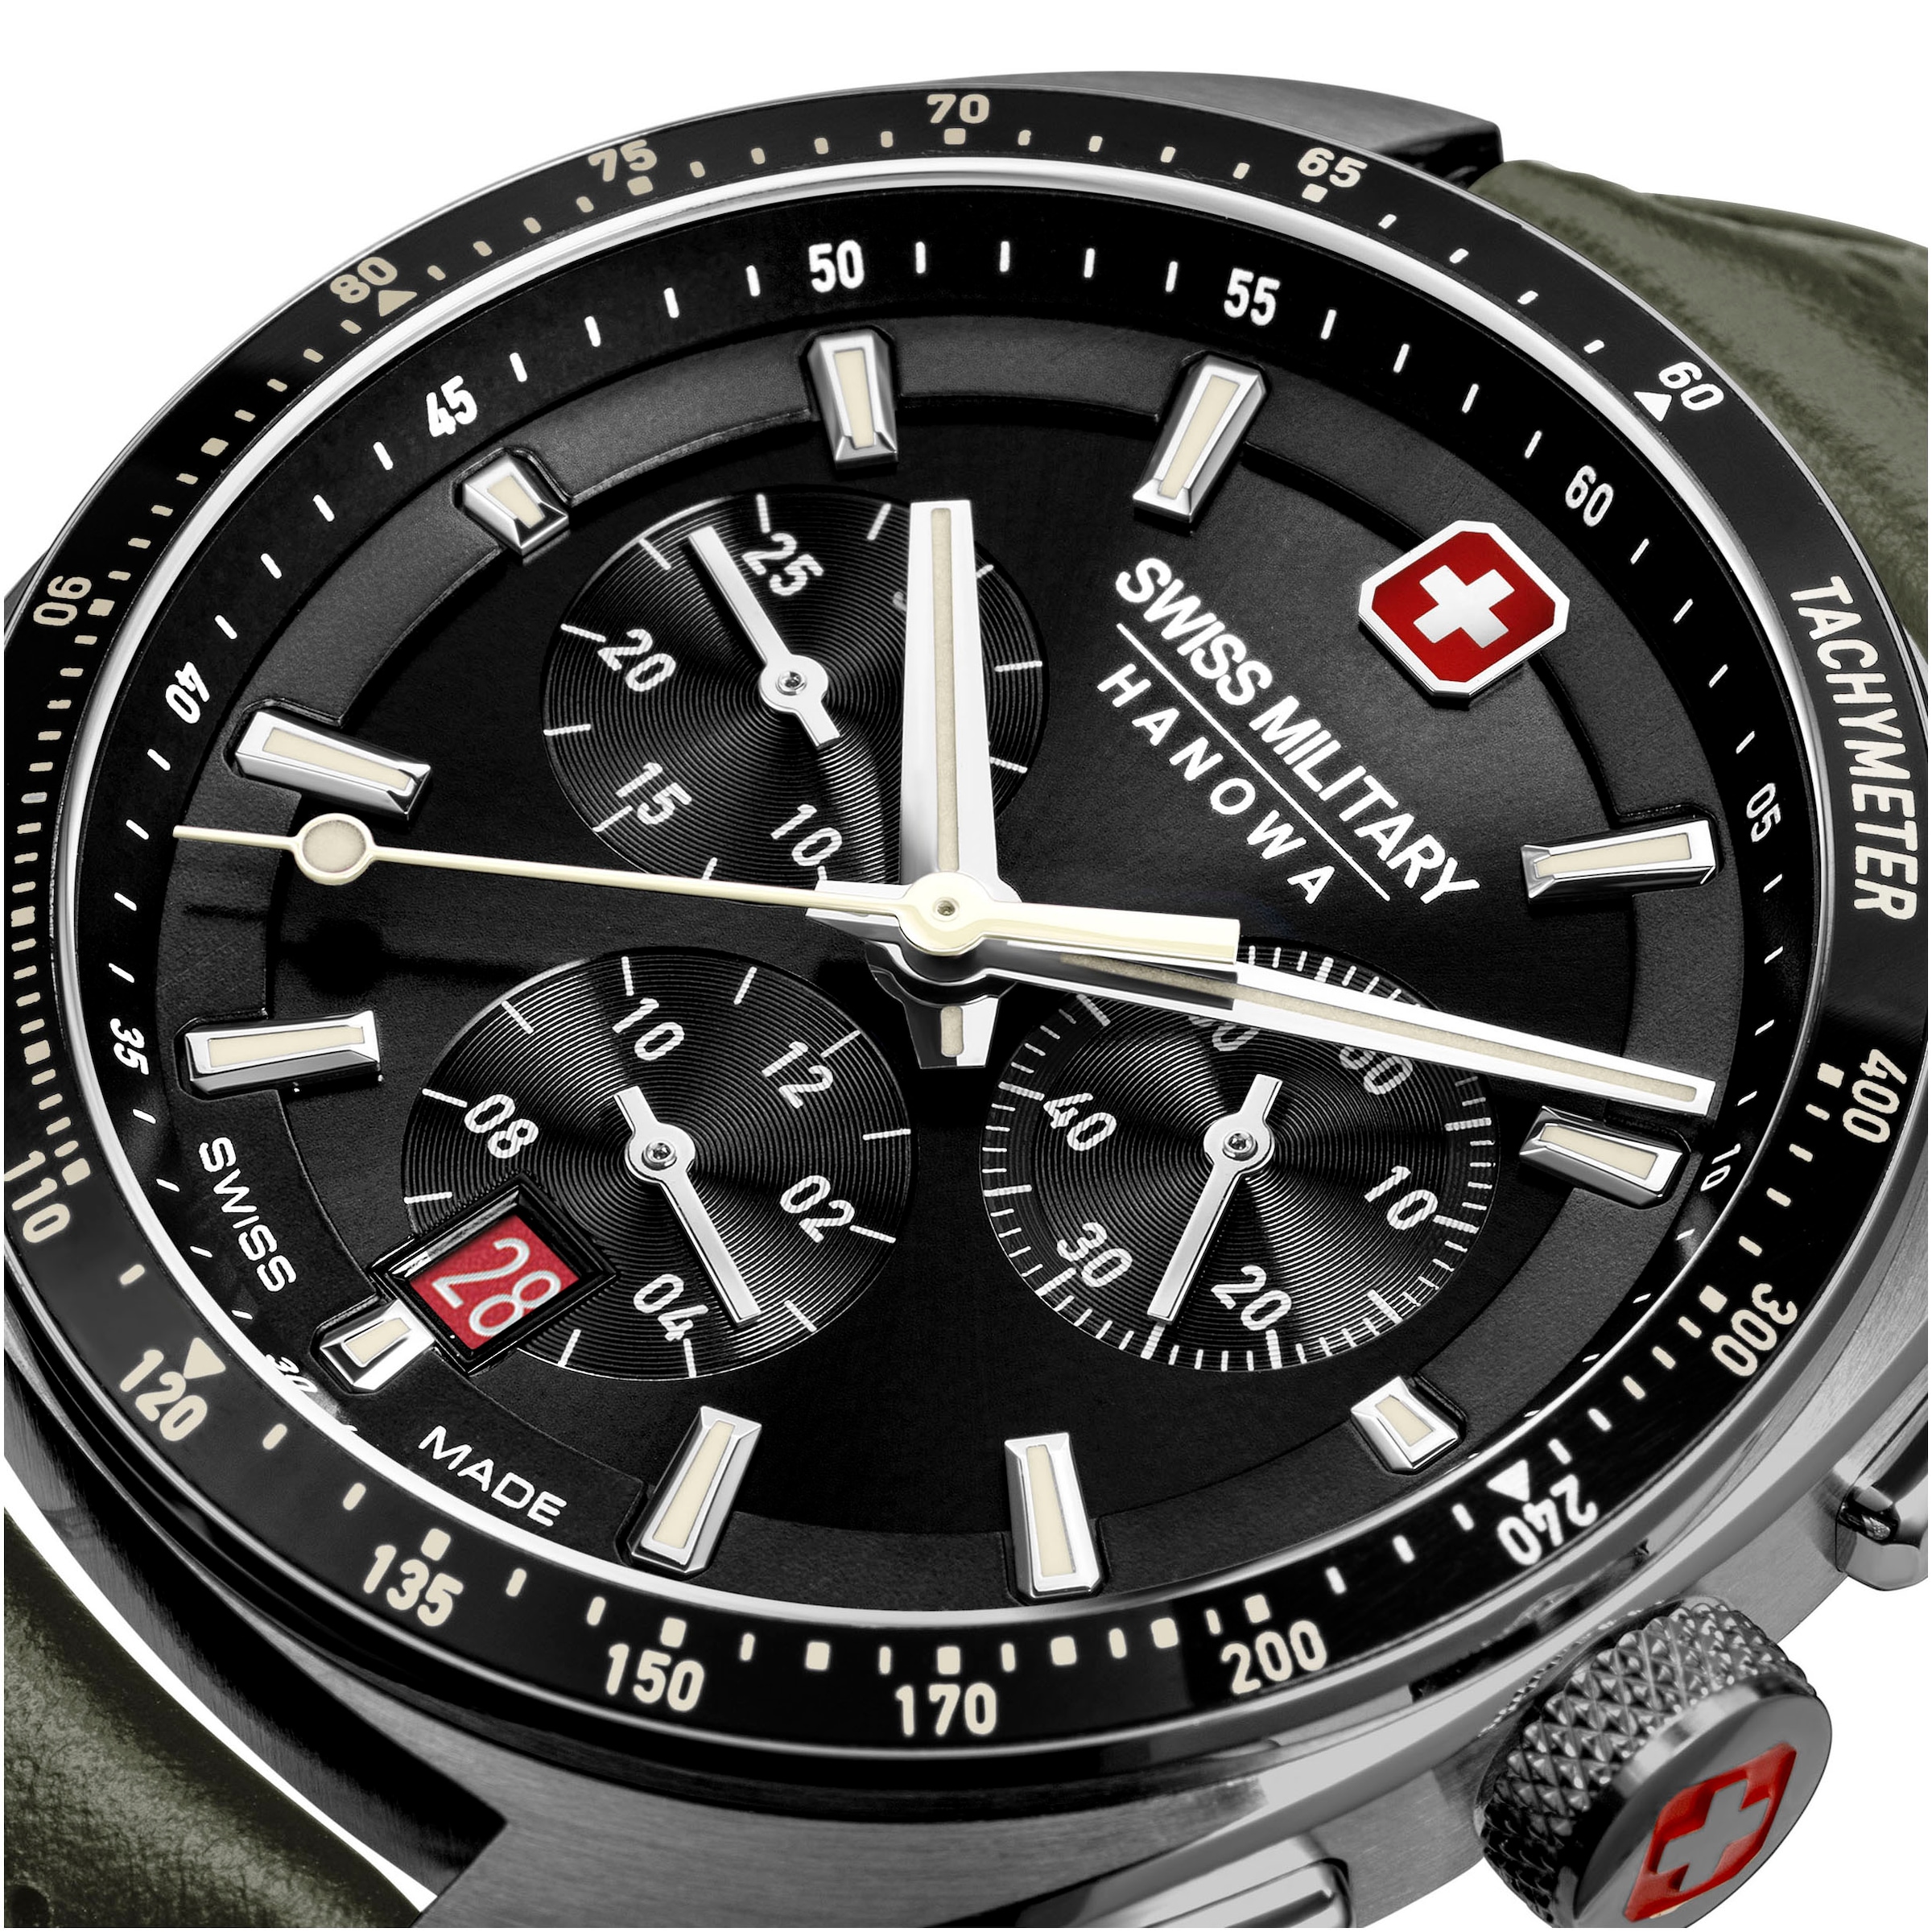 Swiss Military Hanowa Chronograph »DEFENDER«, Quarzuhr, Armbanduhr, Herren, Schweizer Uhr, Swiss Made, Stoppfunktion